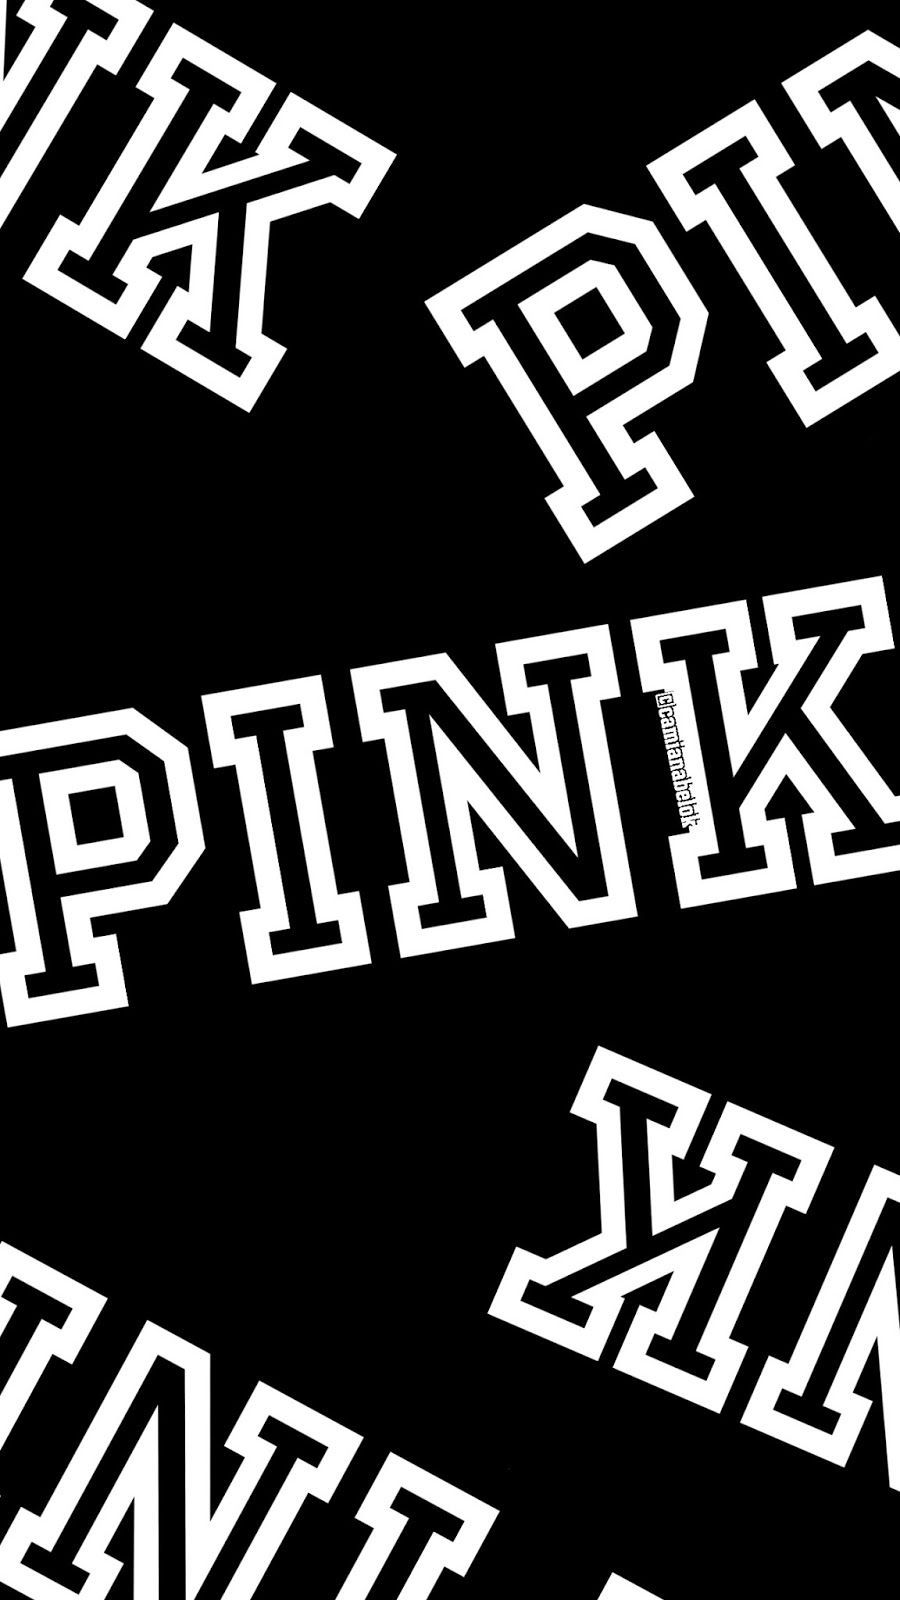 PINK Victoria's Secret Wallpapers